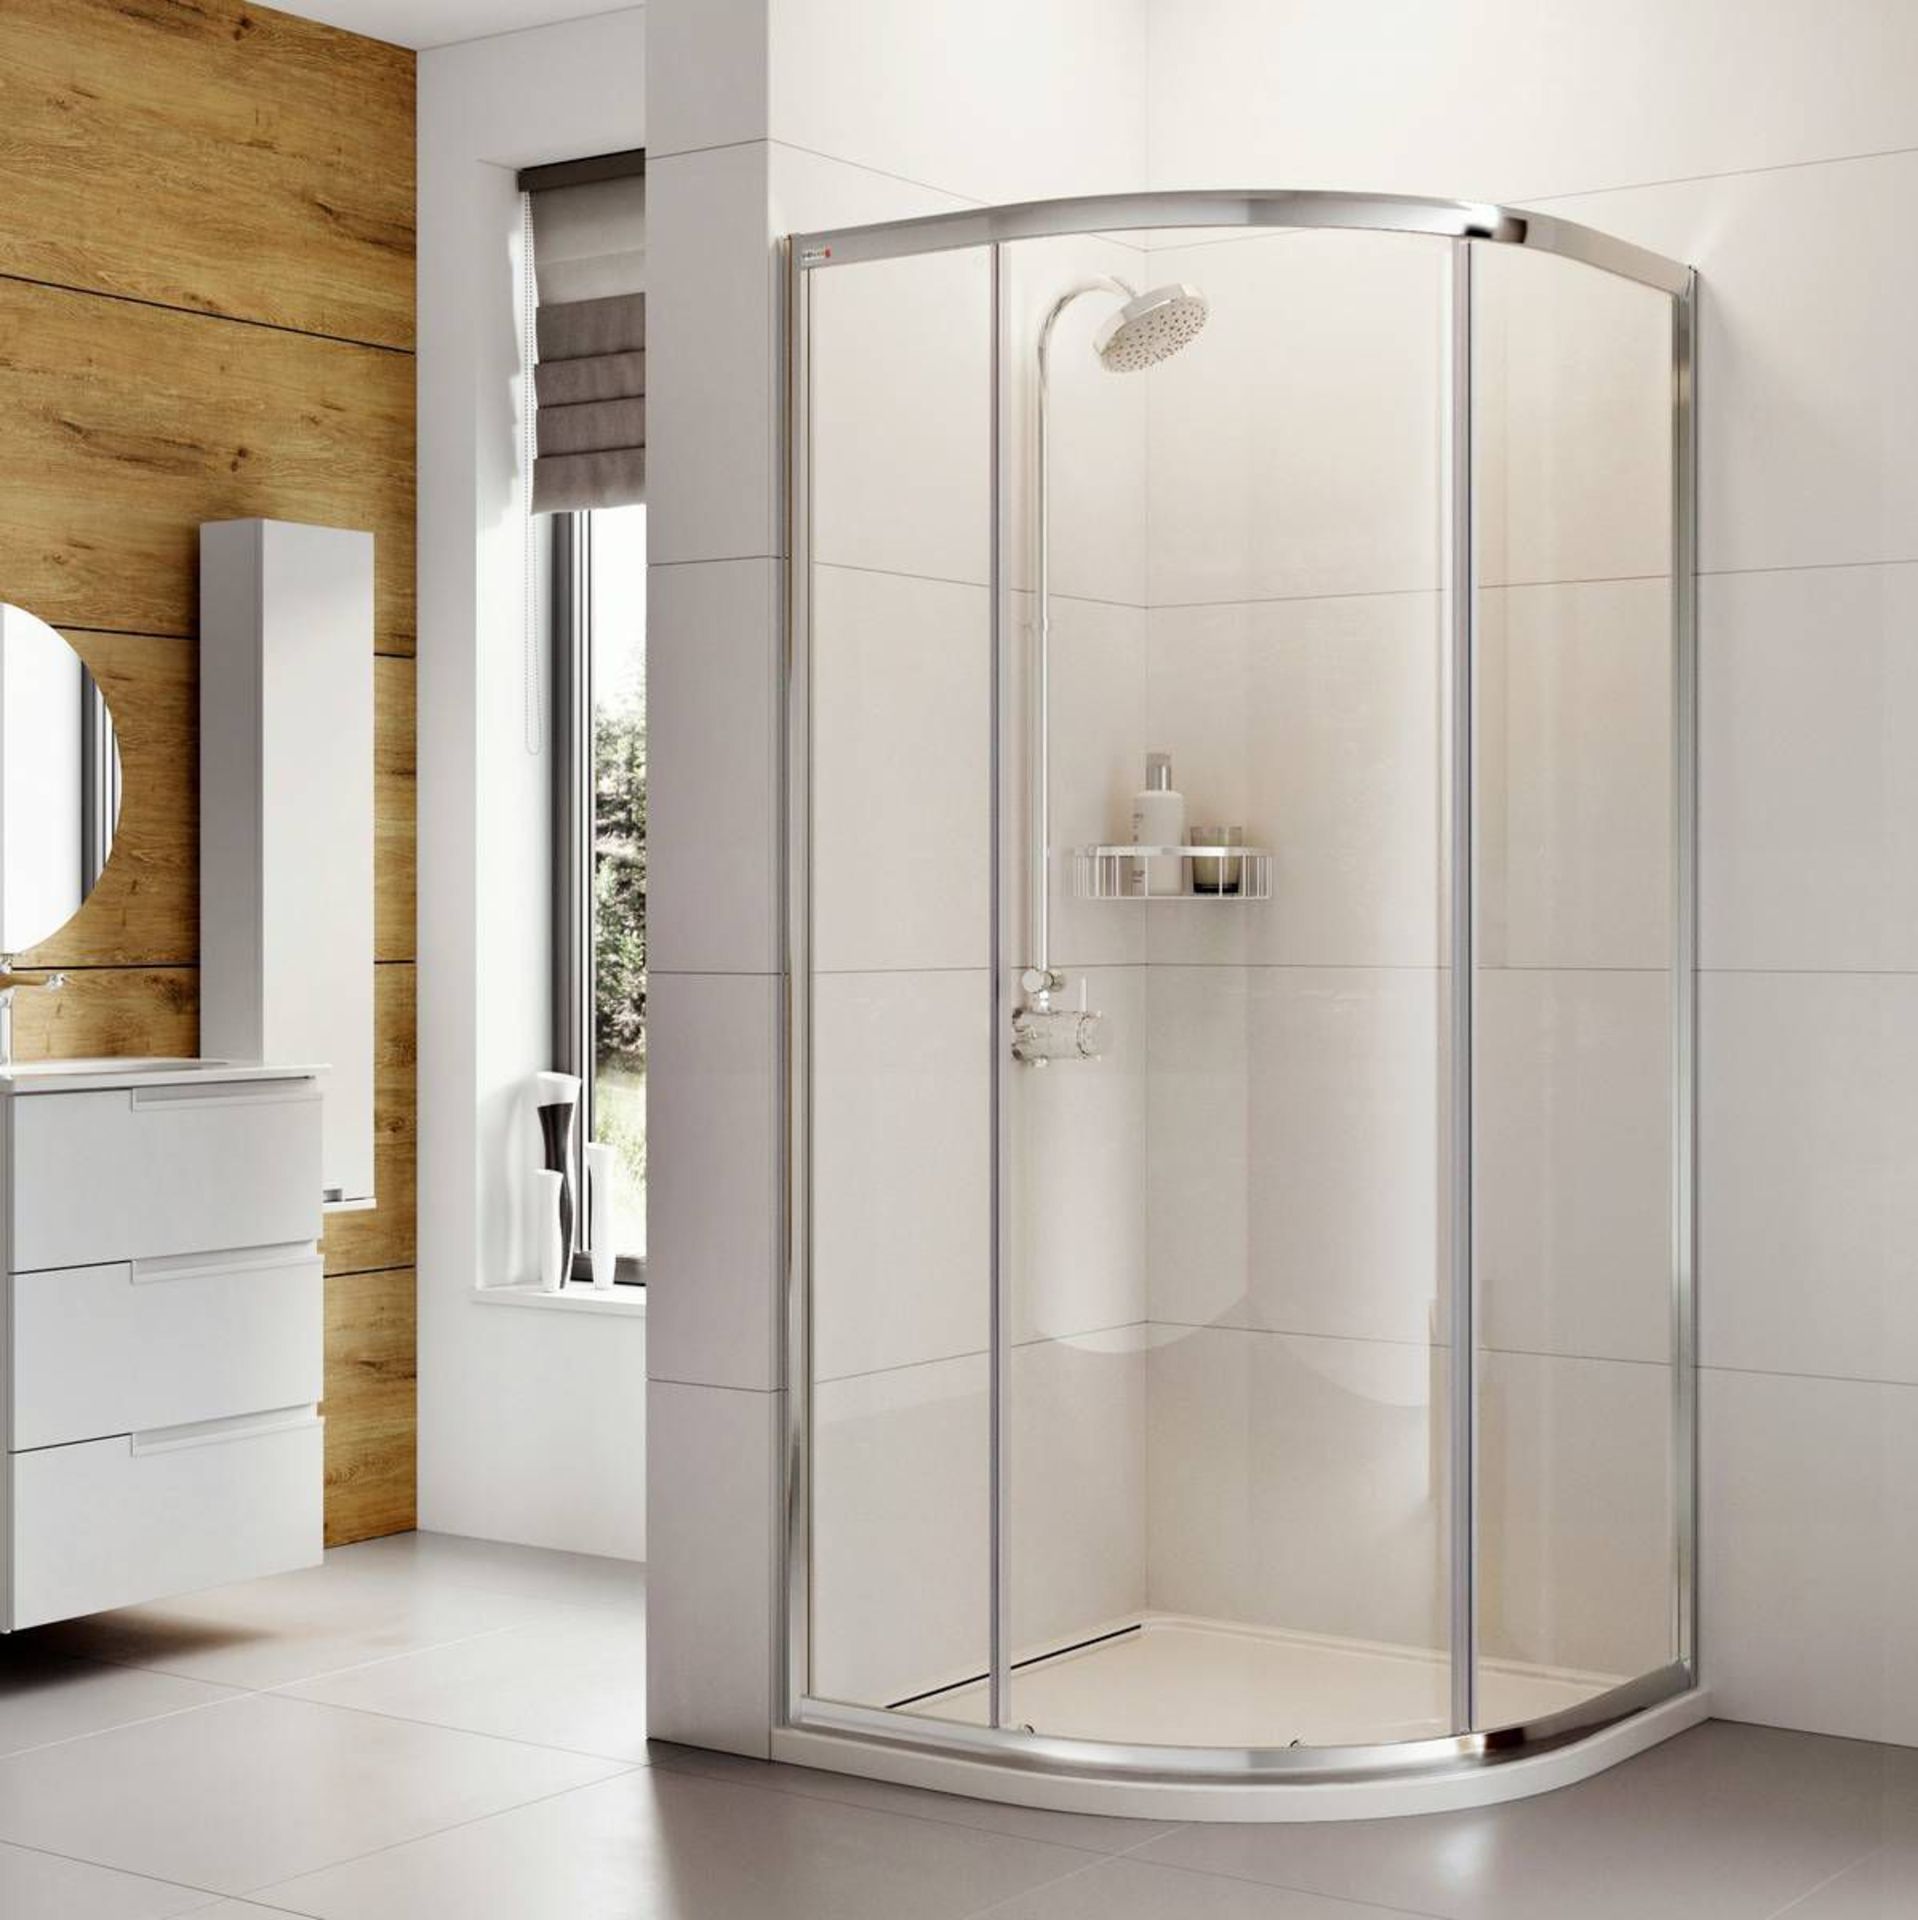 New (D19) 1000x1000mm - Elements 1 Door Quadrant Shower Enclosure. RRP £429.99. Shower Enclos...